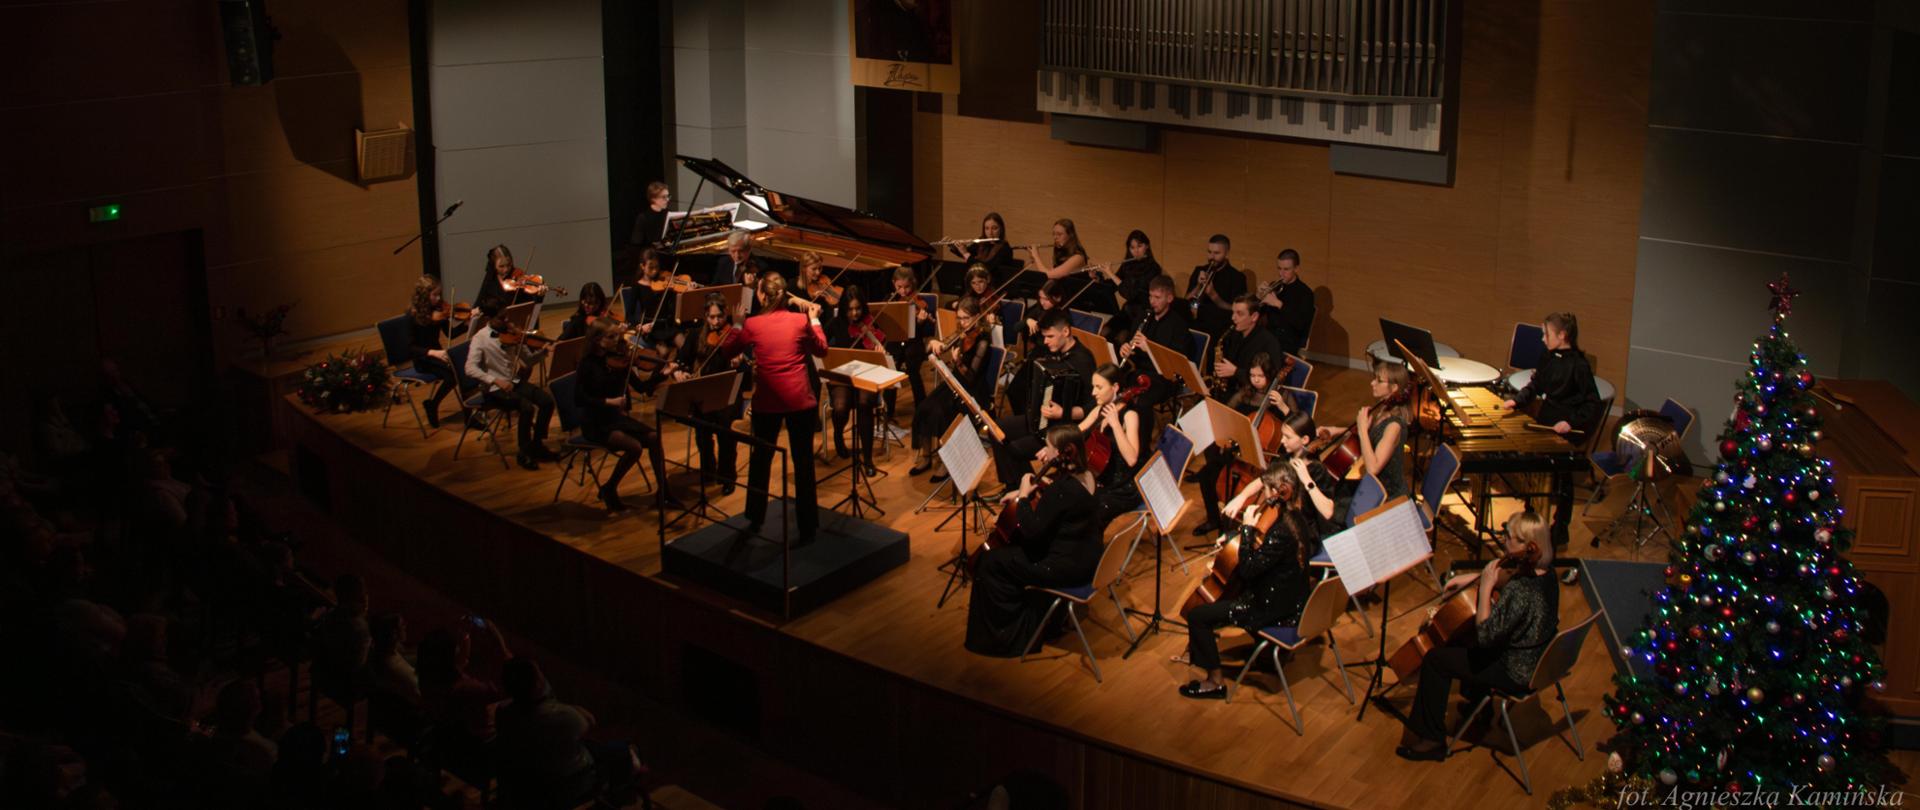 Zdjęcie orkiestry i pianisty w czasie koncertu